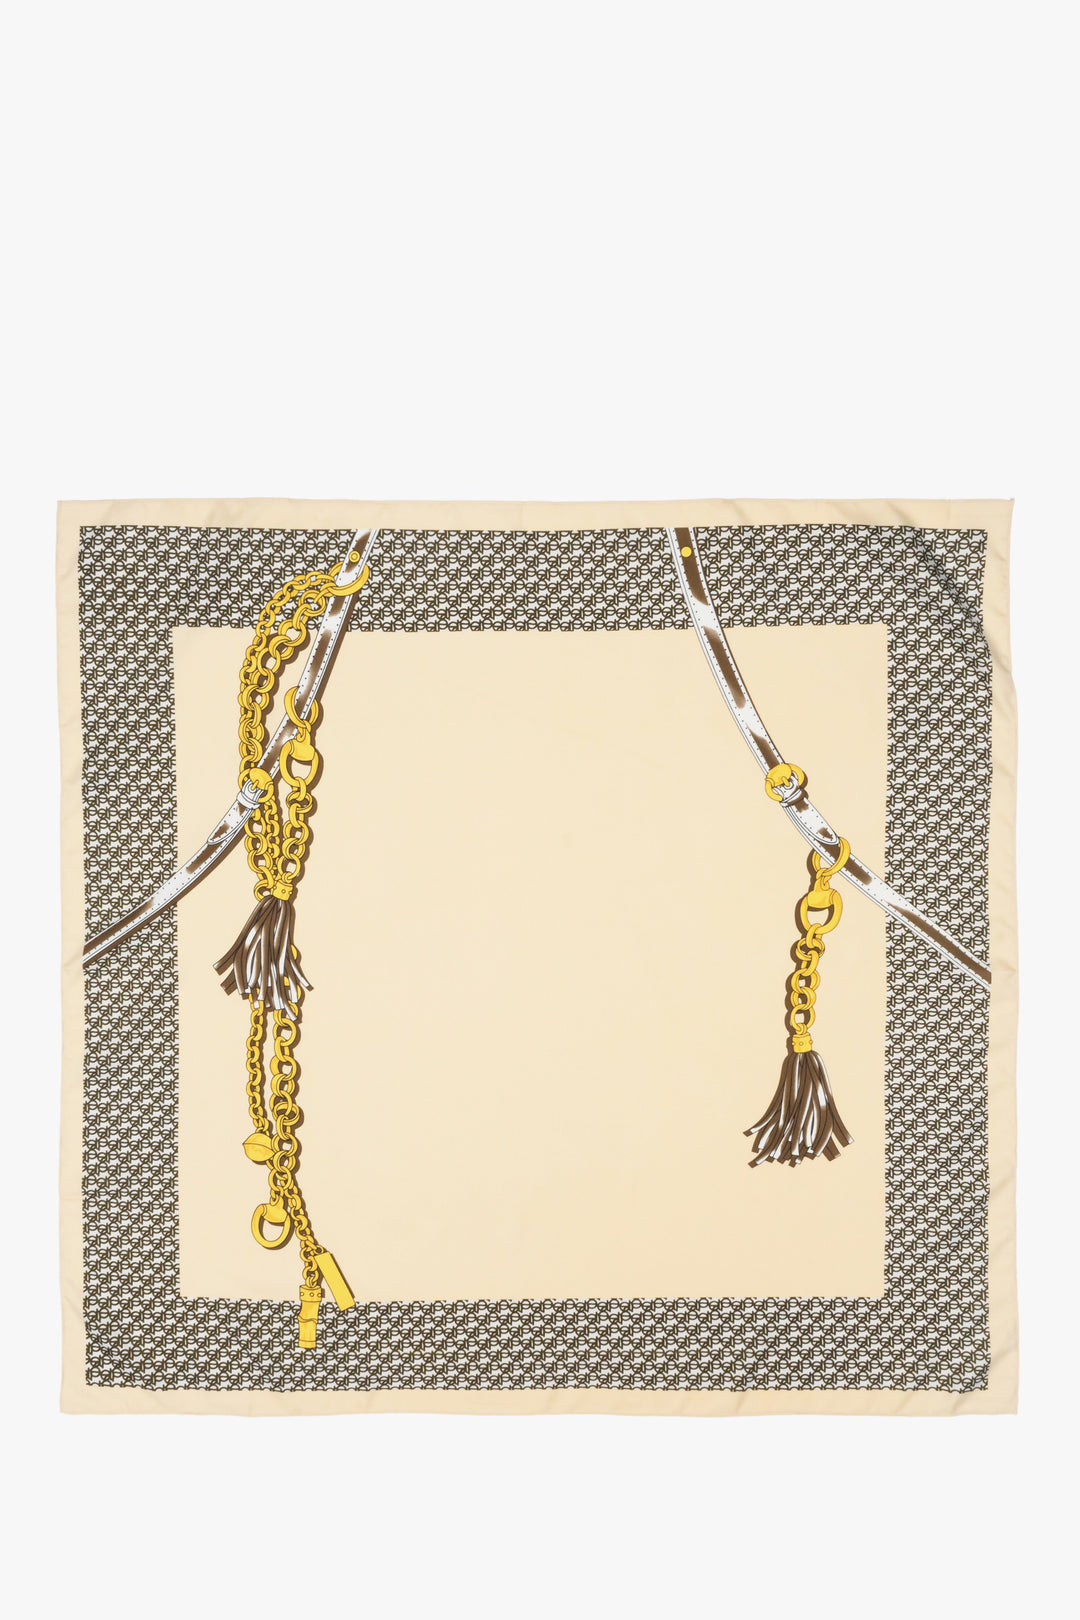 Women's beige-brown-gold neckerchief by Estro.